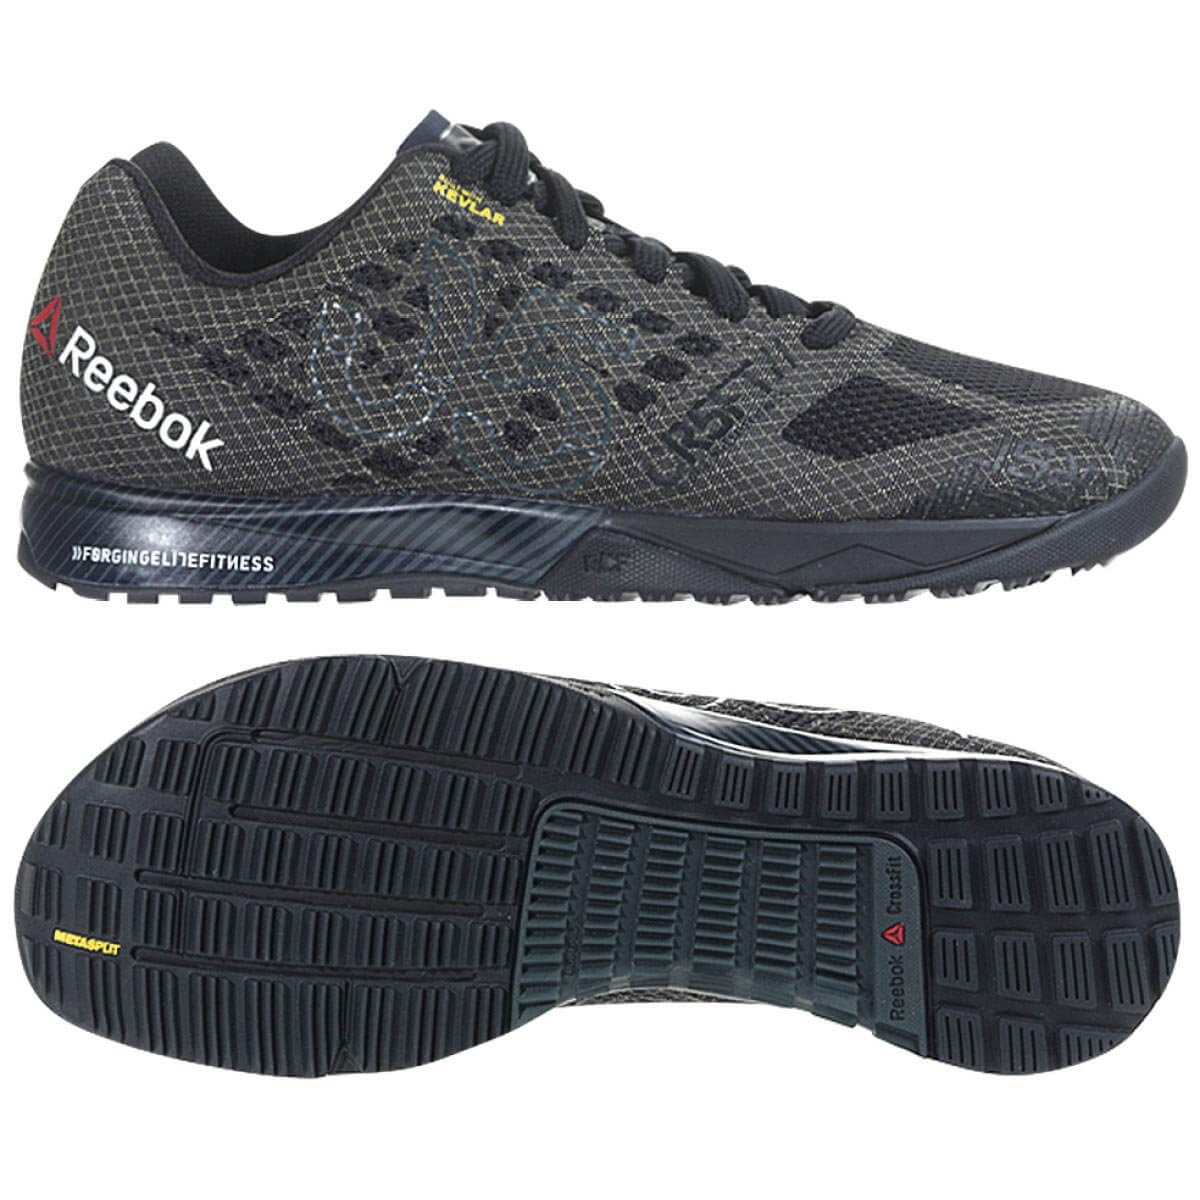 Fitness schoenen Reebok Crossfit Nano 5.0